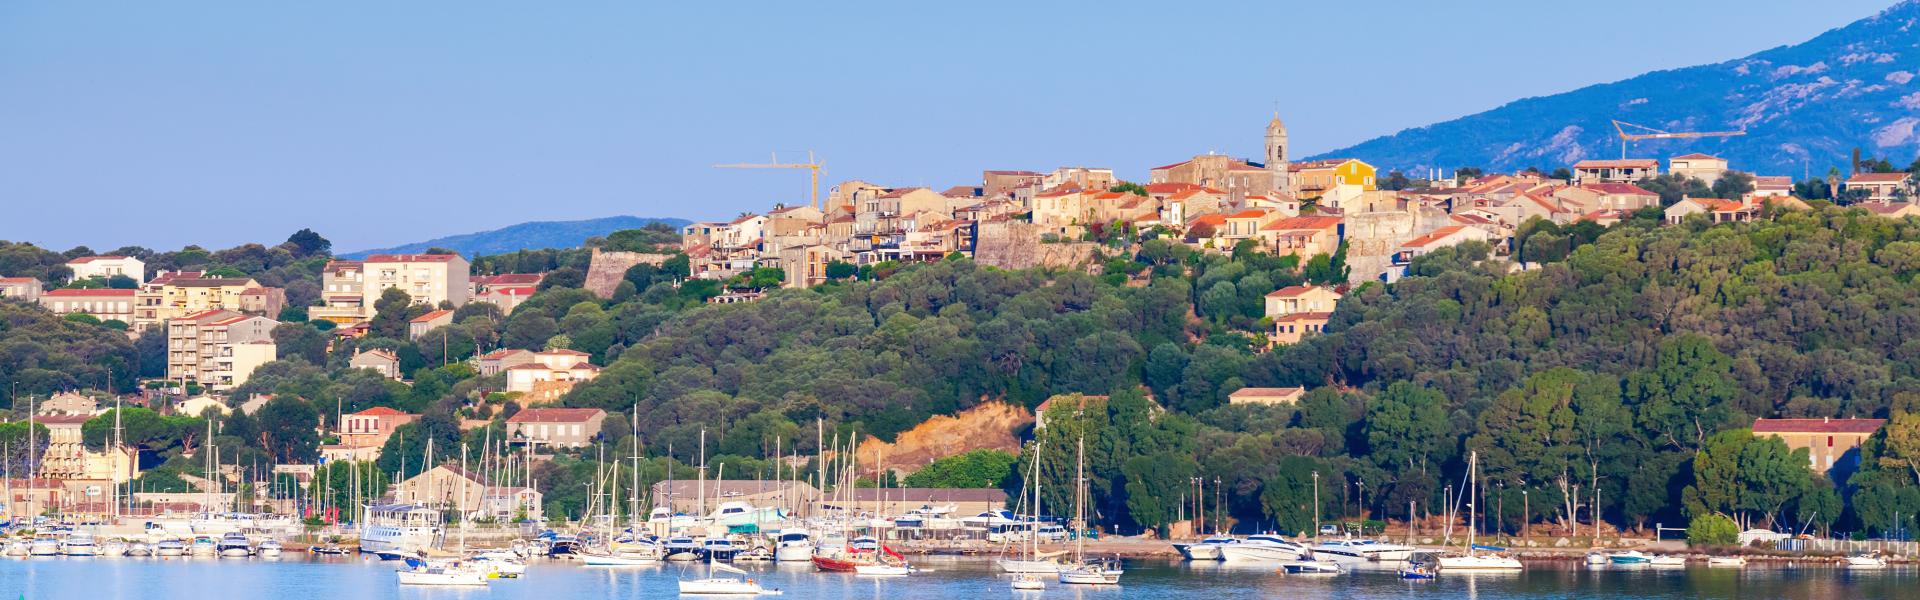 Ferienwohnungen & Ferienhäuser für Urlaub in Porto-Vecchio - Casamundo